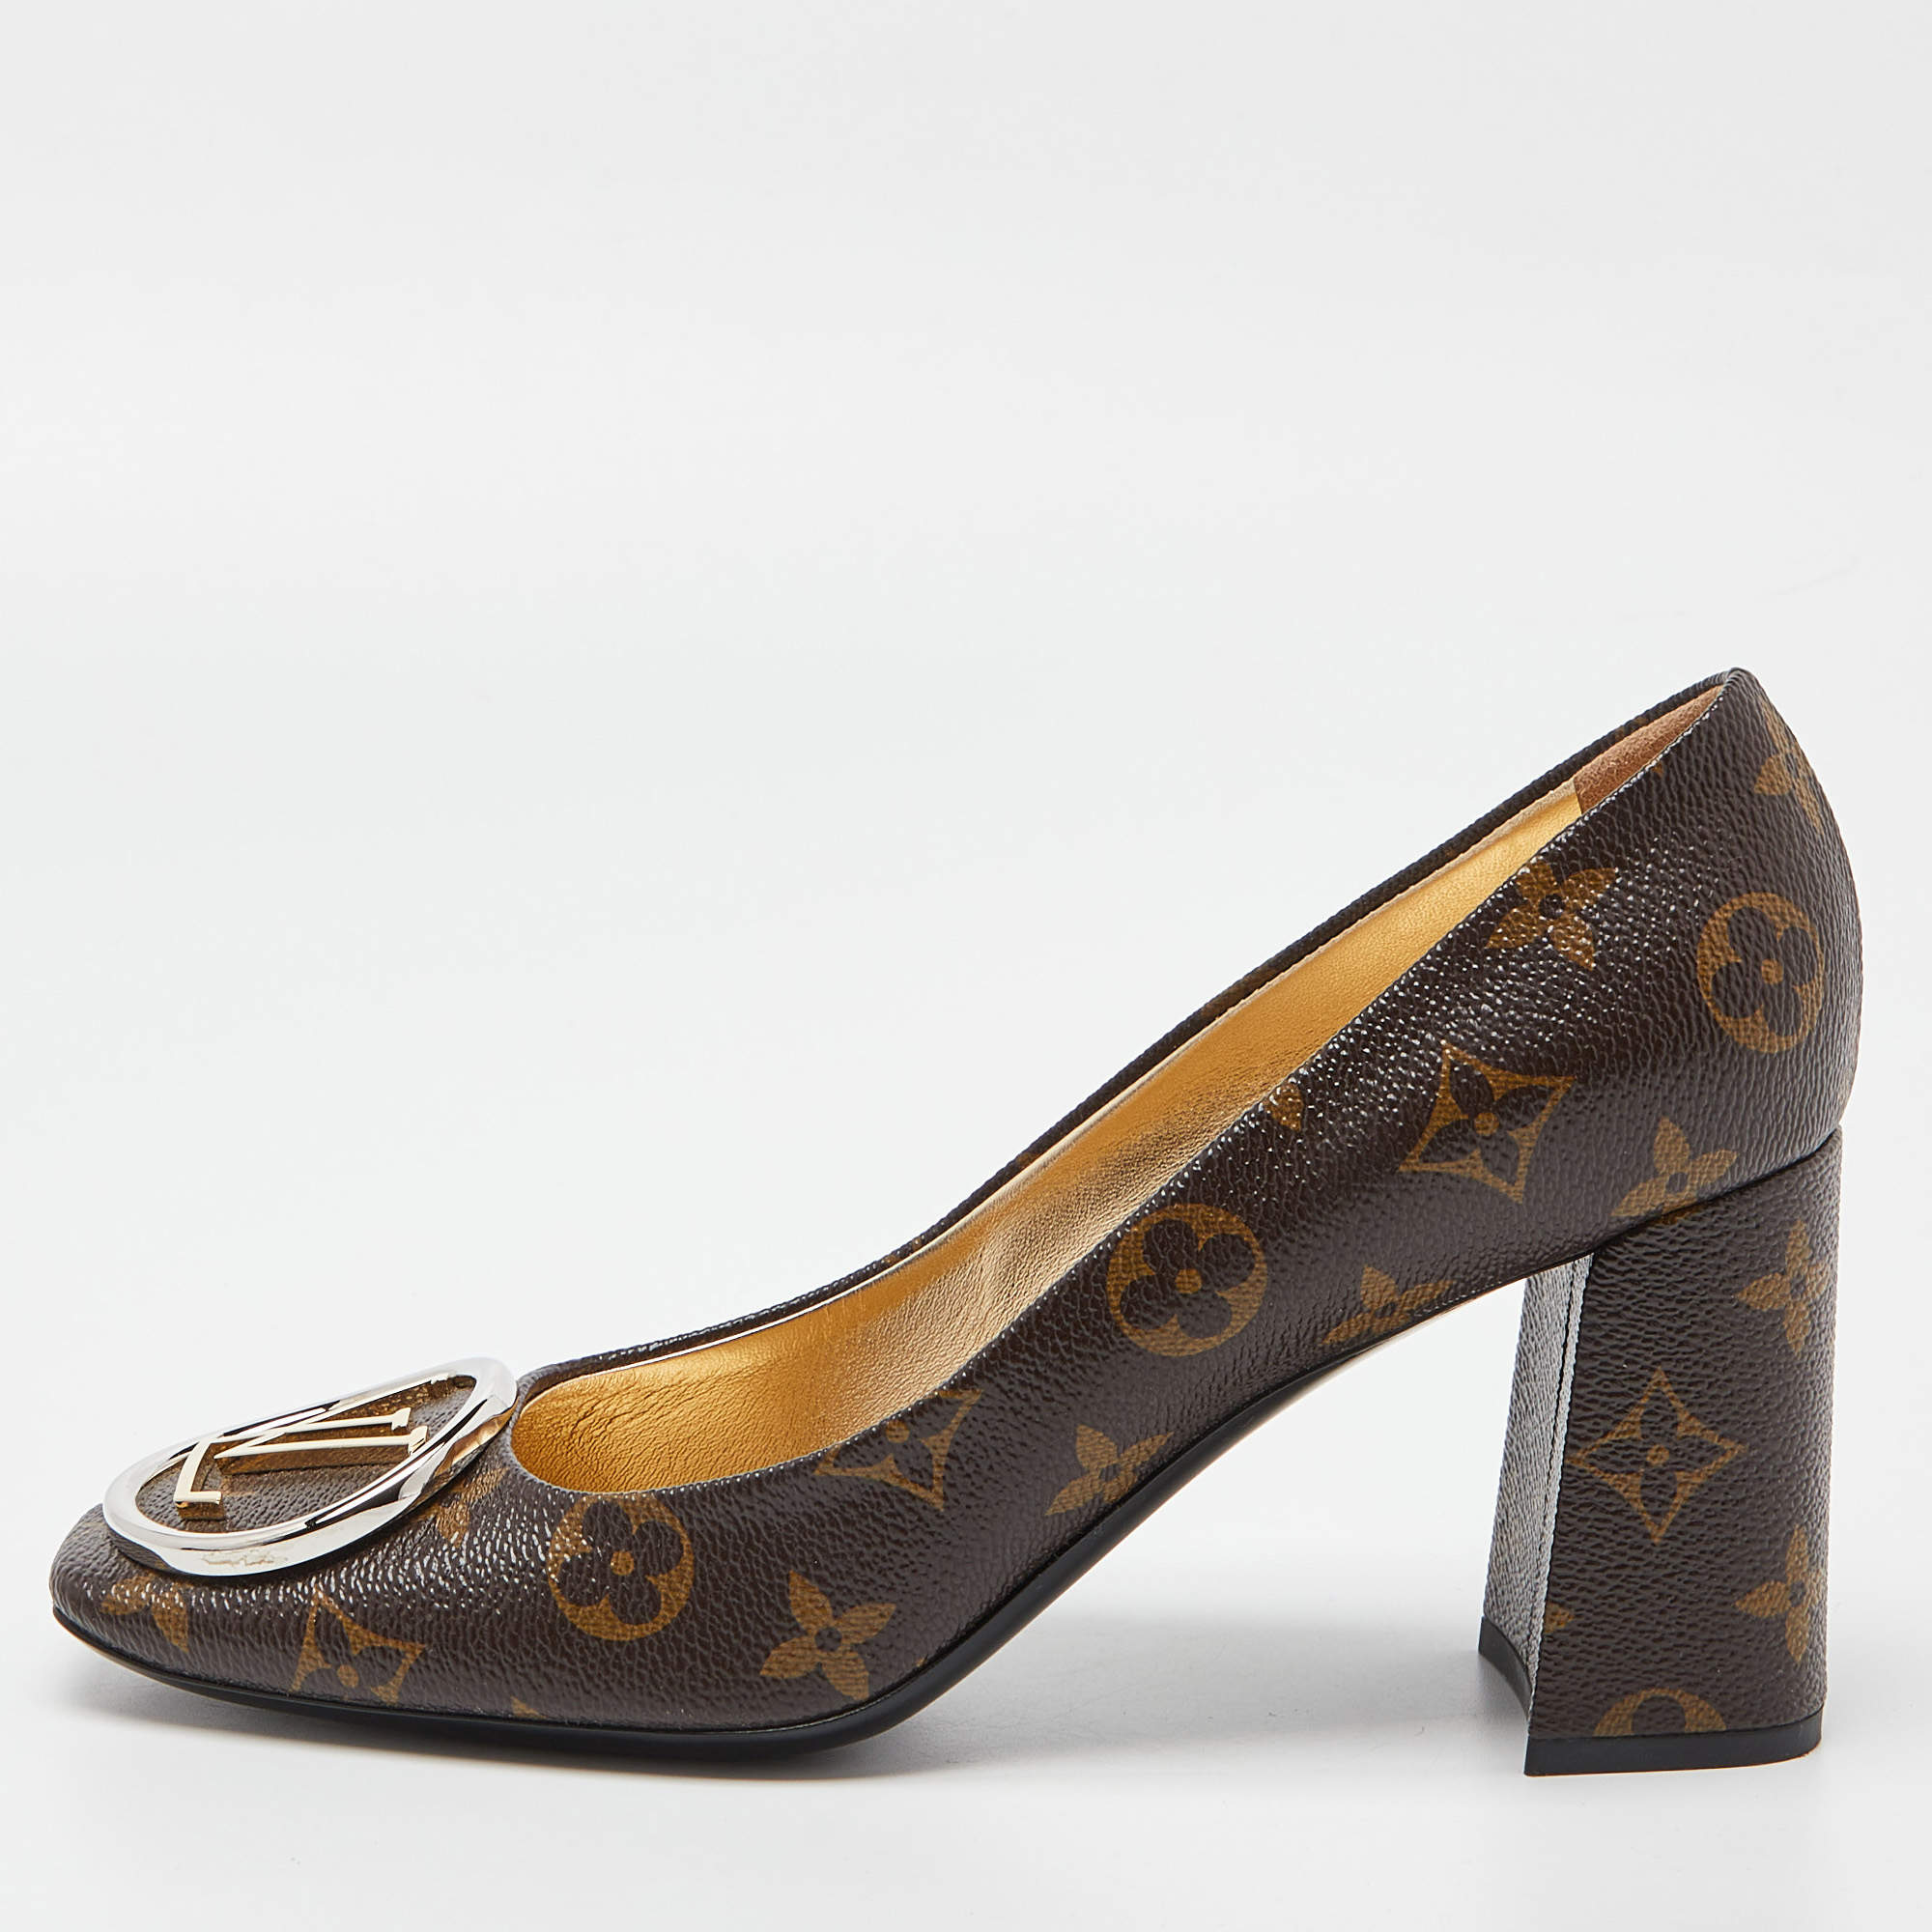 Louis Vuitton Monogram Canvas Madeleine Block Heel Pumps Size 38.5